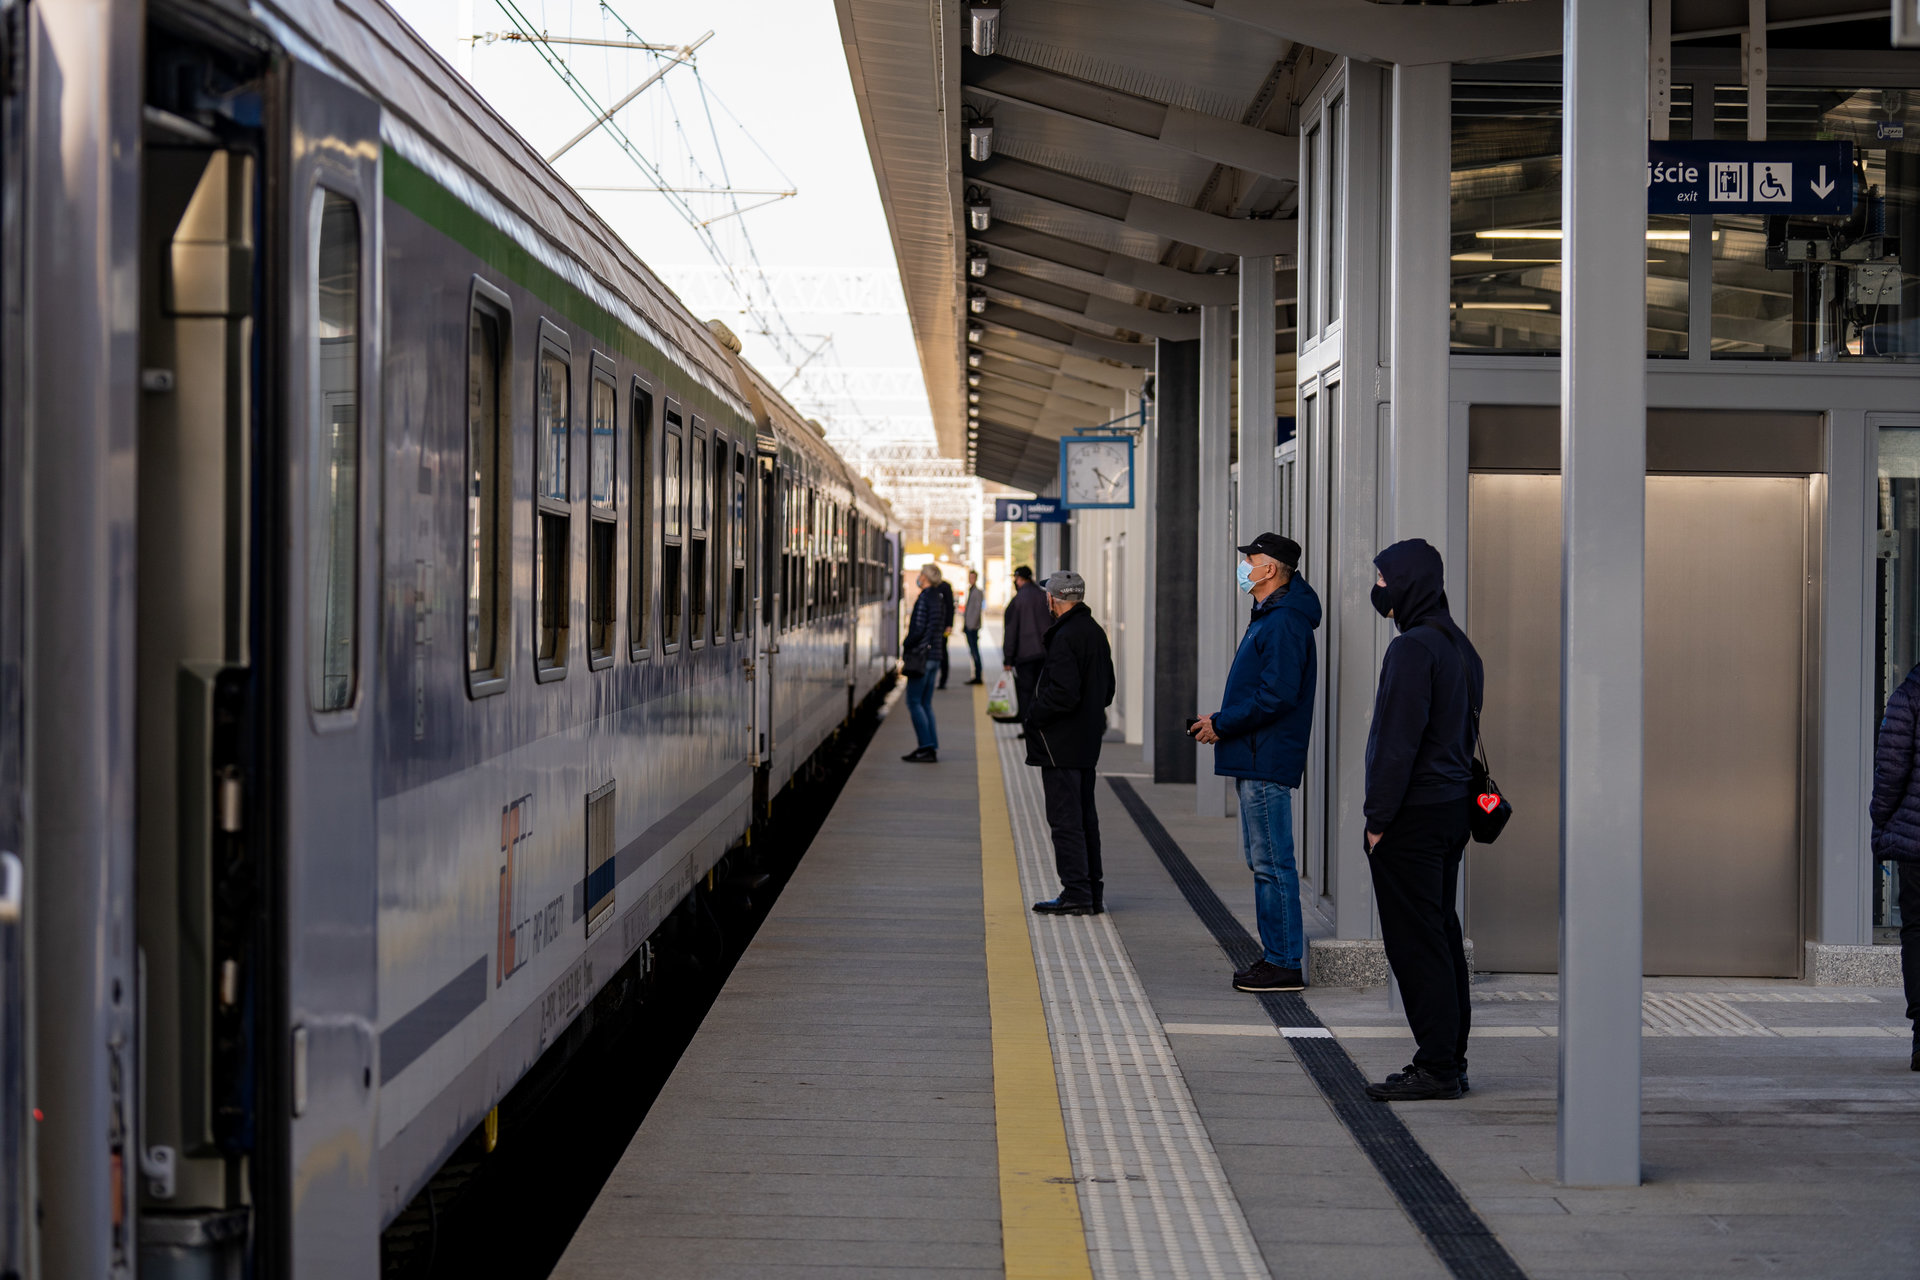 Urząd Transportu Kolejowego przedstawił dane dot. punktualności pociągów w II kwartale roku (fot. Szymon Grochowski / PKP PLK)